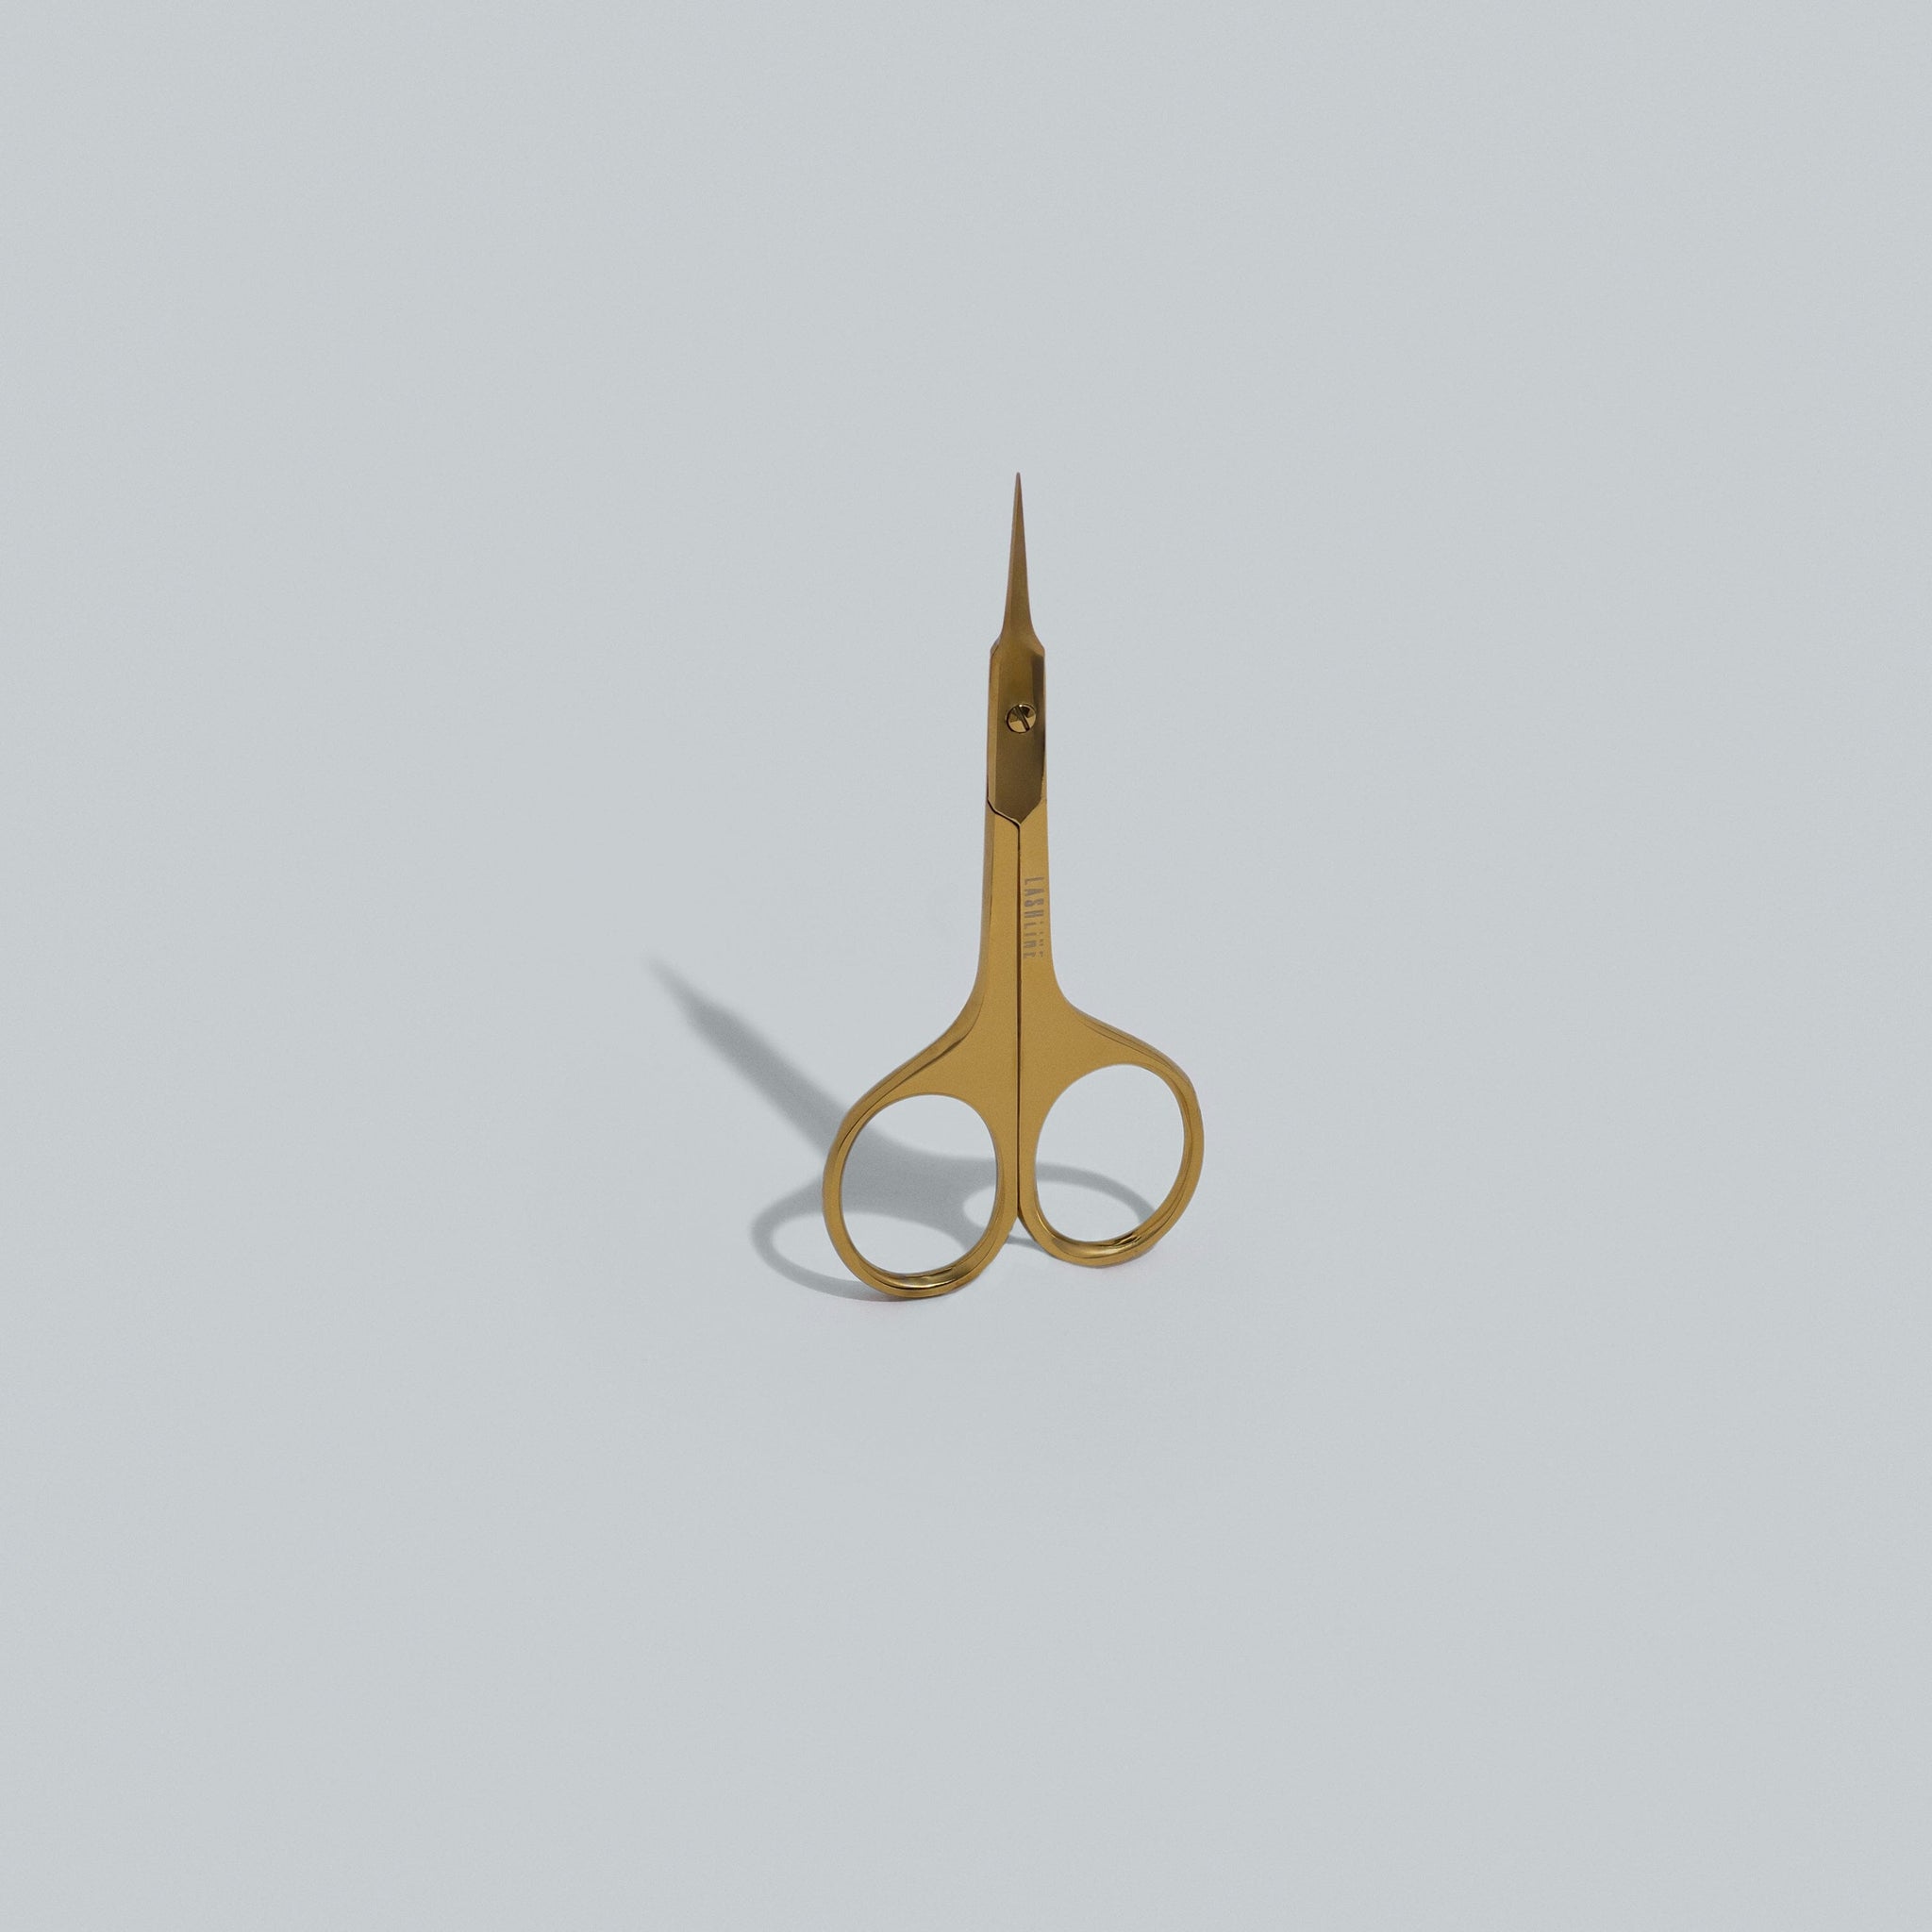 Professional Scissors Tweezers Lash Line Academy and Supplies 